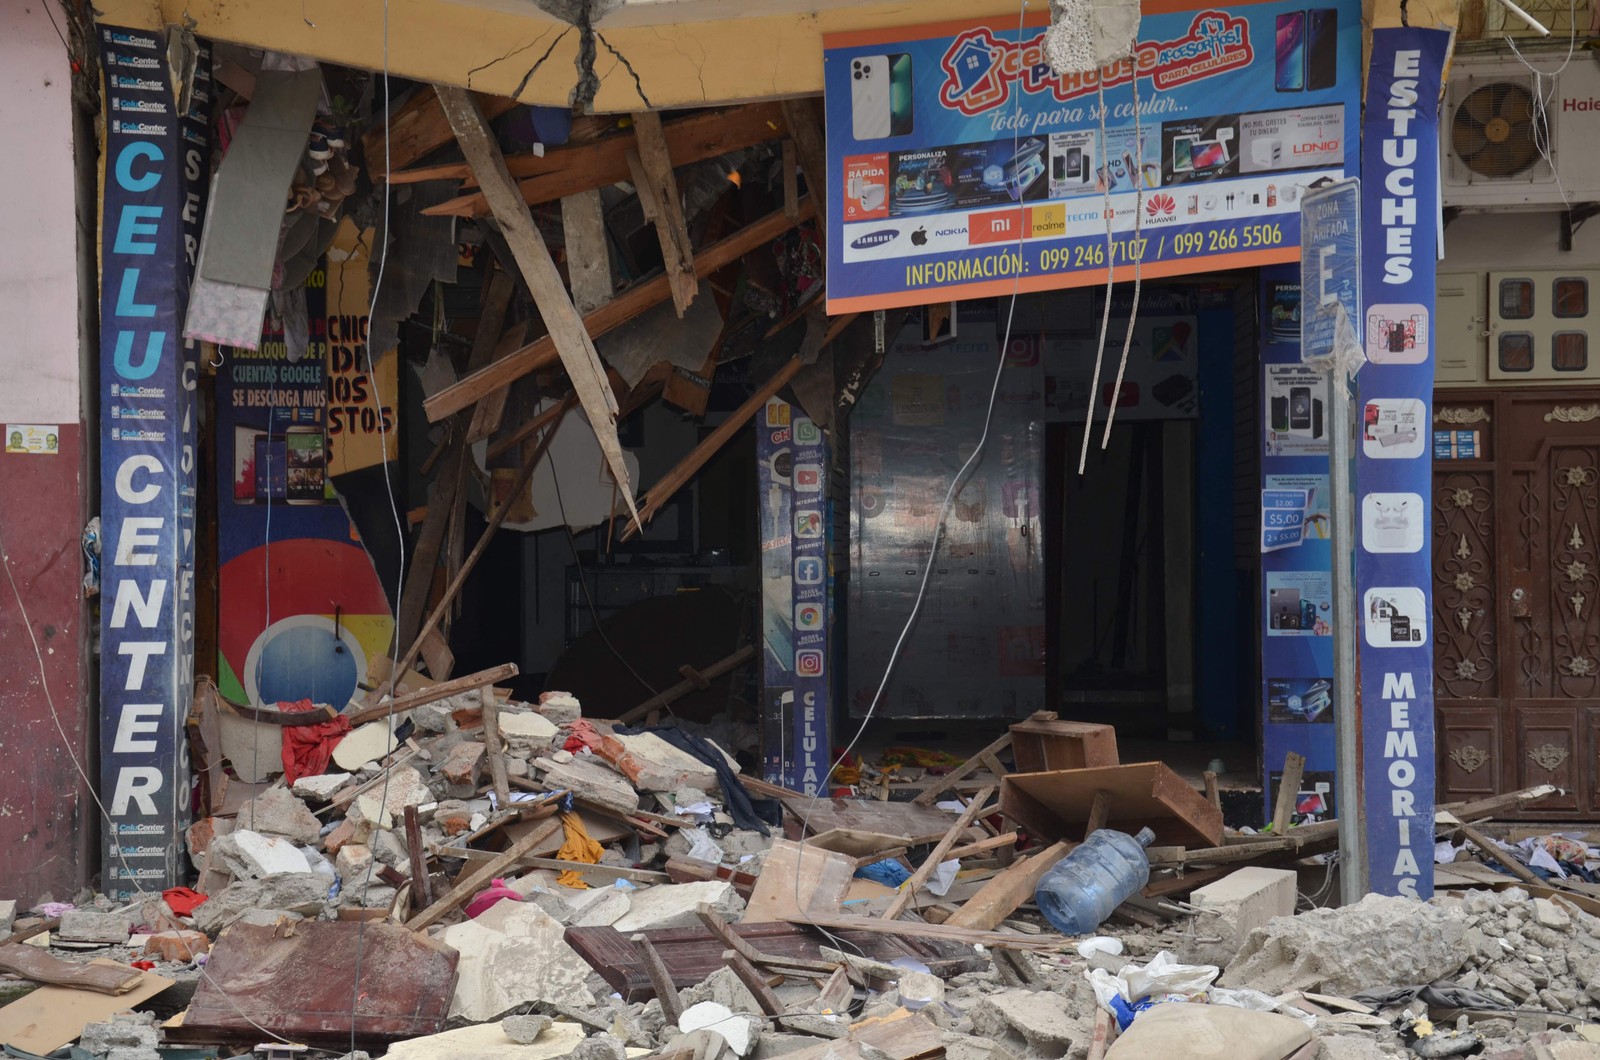 Prédio destruído é visto após terremoto de magnitude 6,5 na cidade de Machala, Equador — Foto: ARIEL SUAREZ/AFP